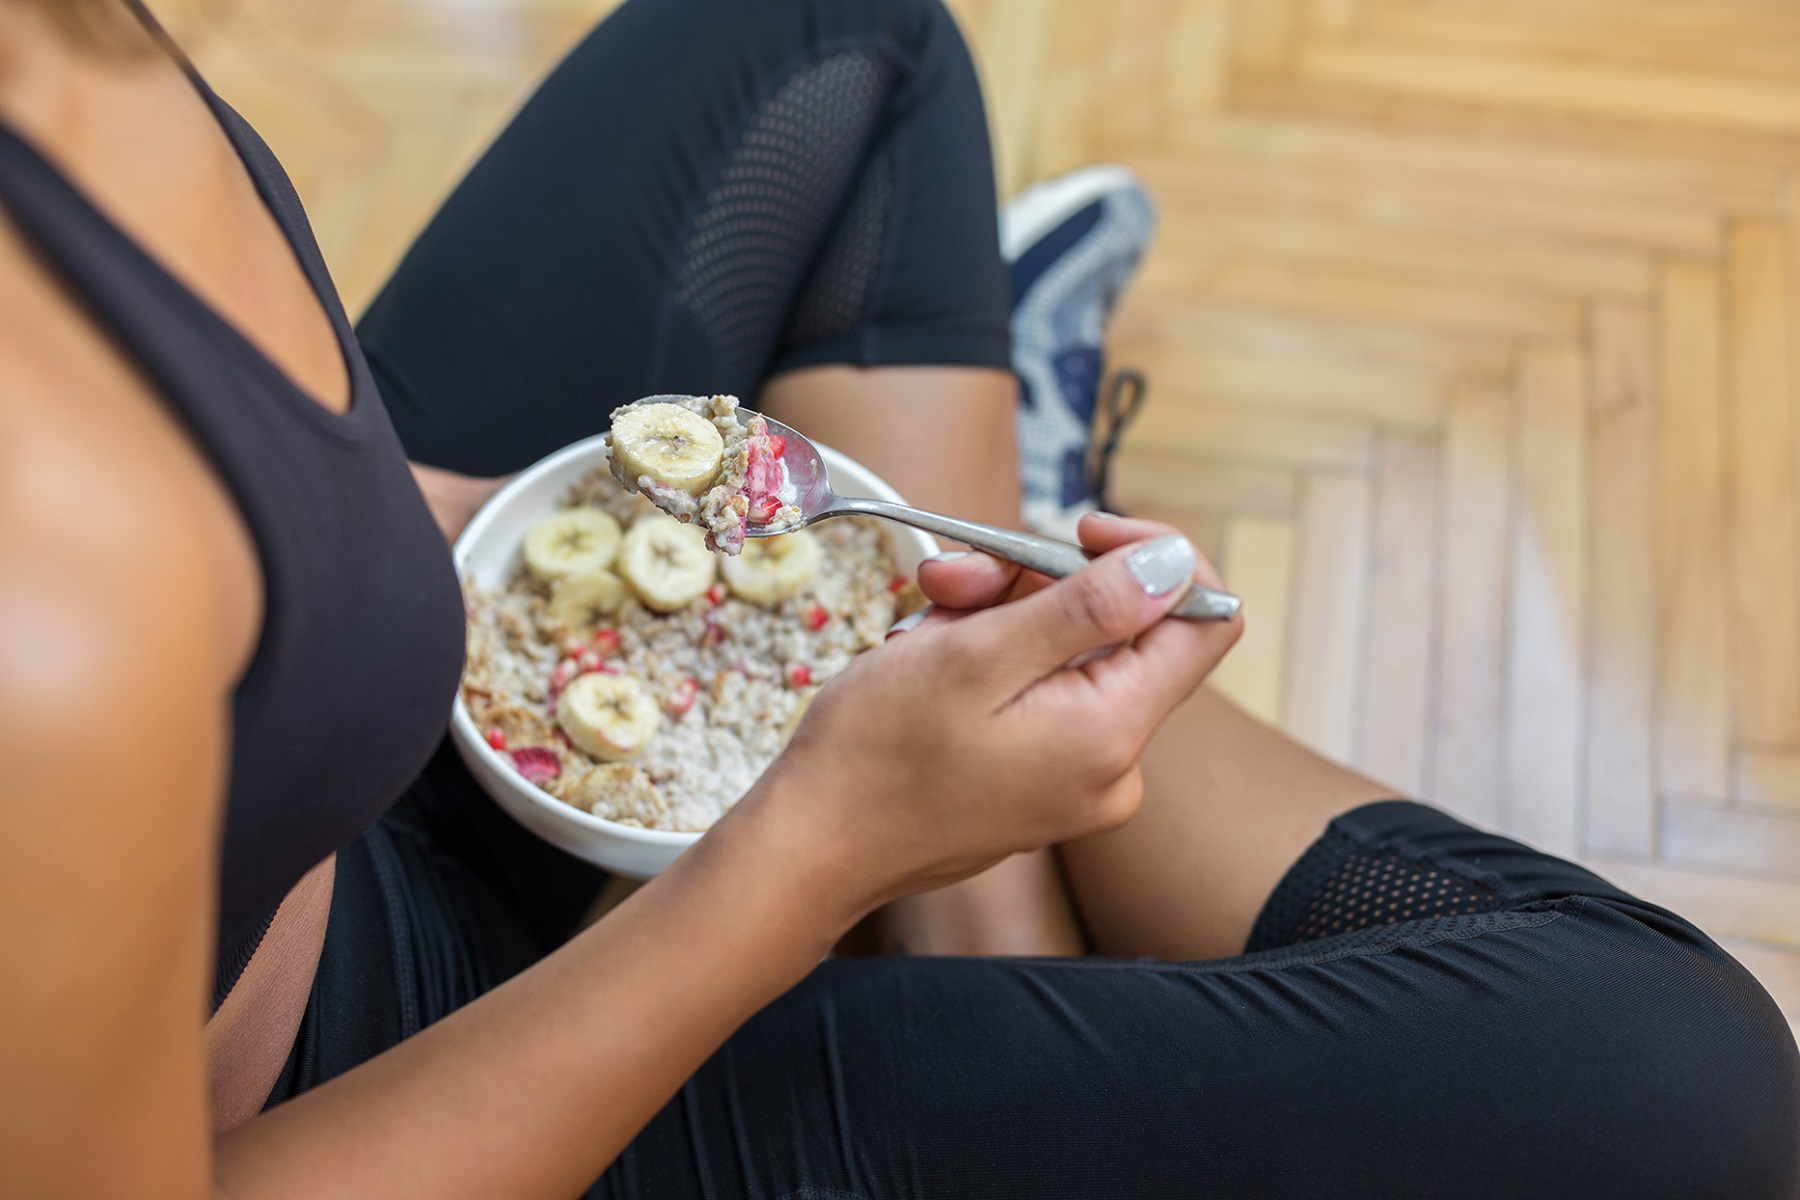 Άσκηση Διατροφή: Πώς να πετυχαίνετε τους στόχους σας χωρίς περαιτέρω κούραση